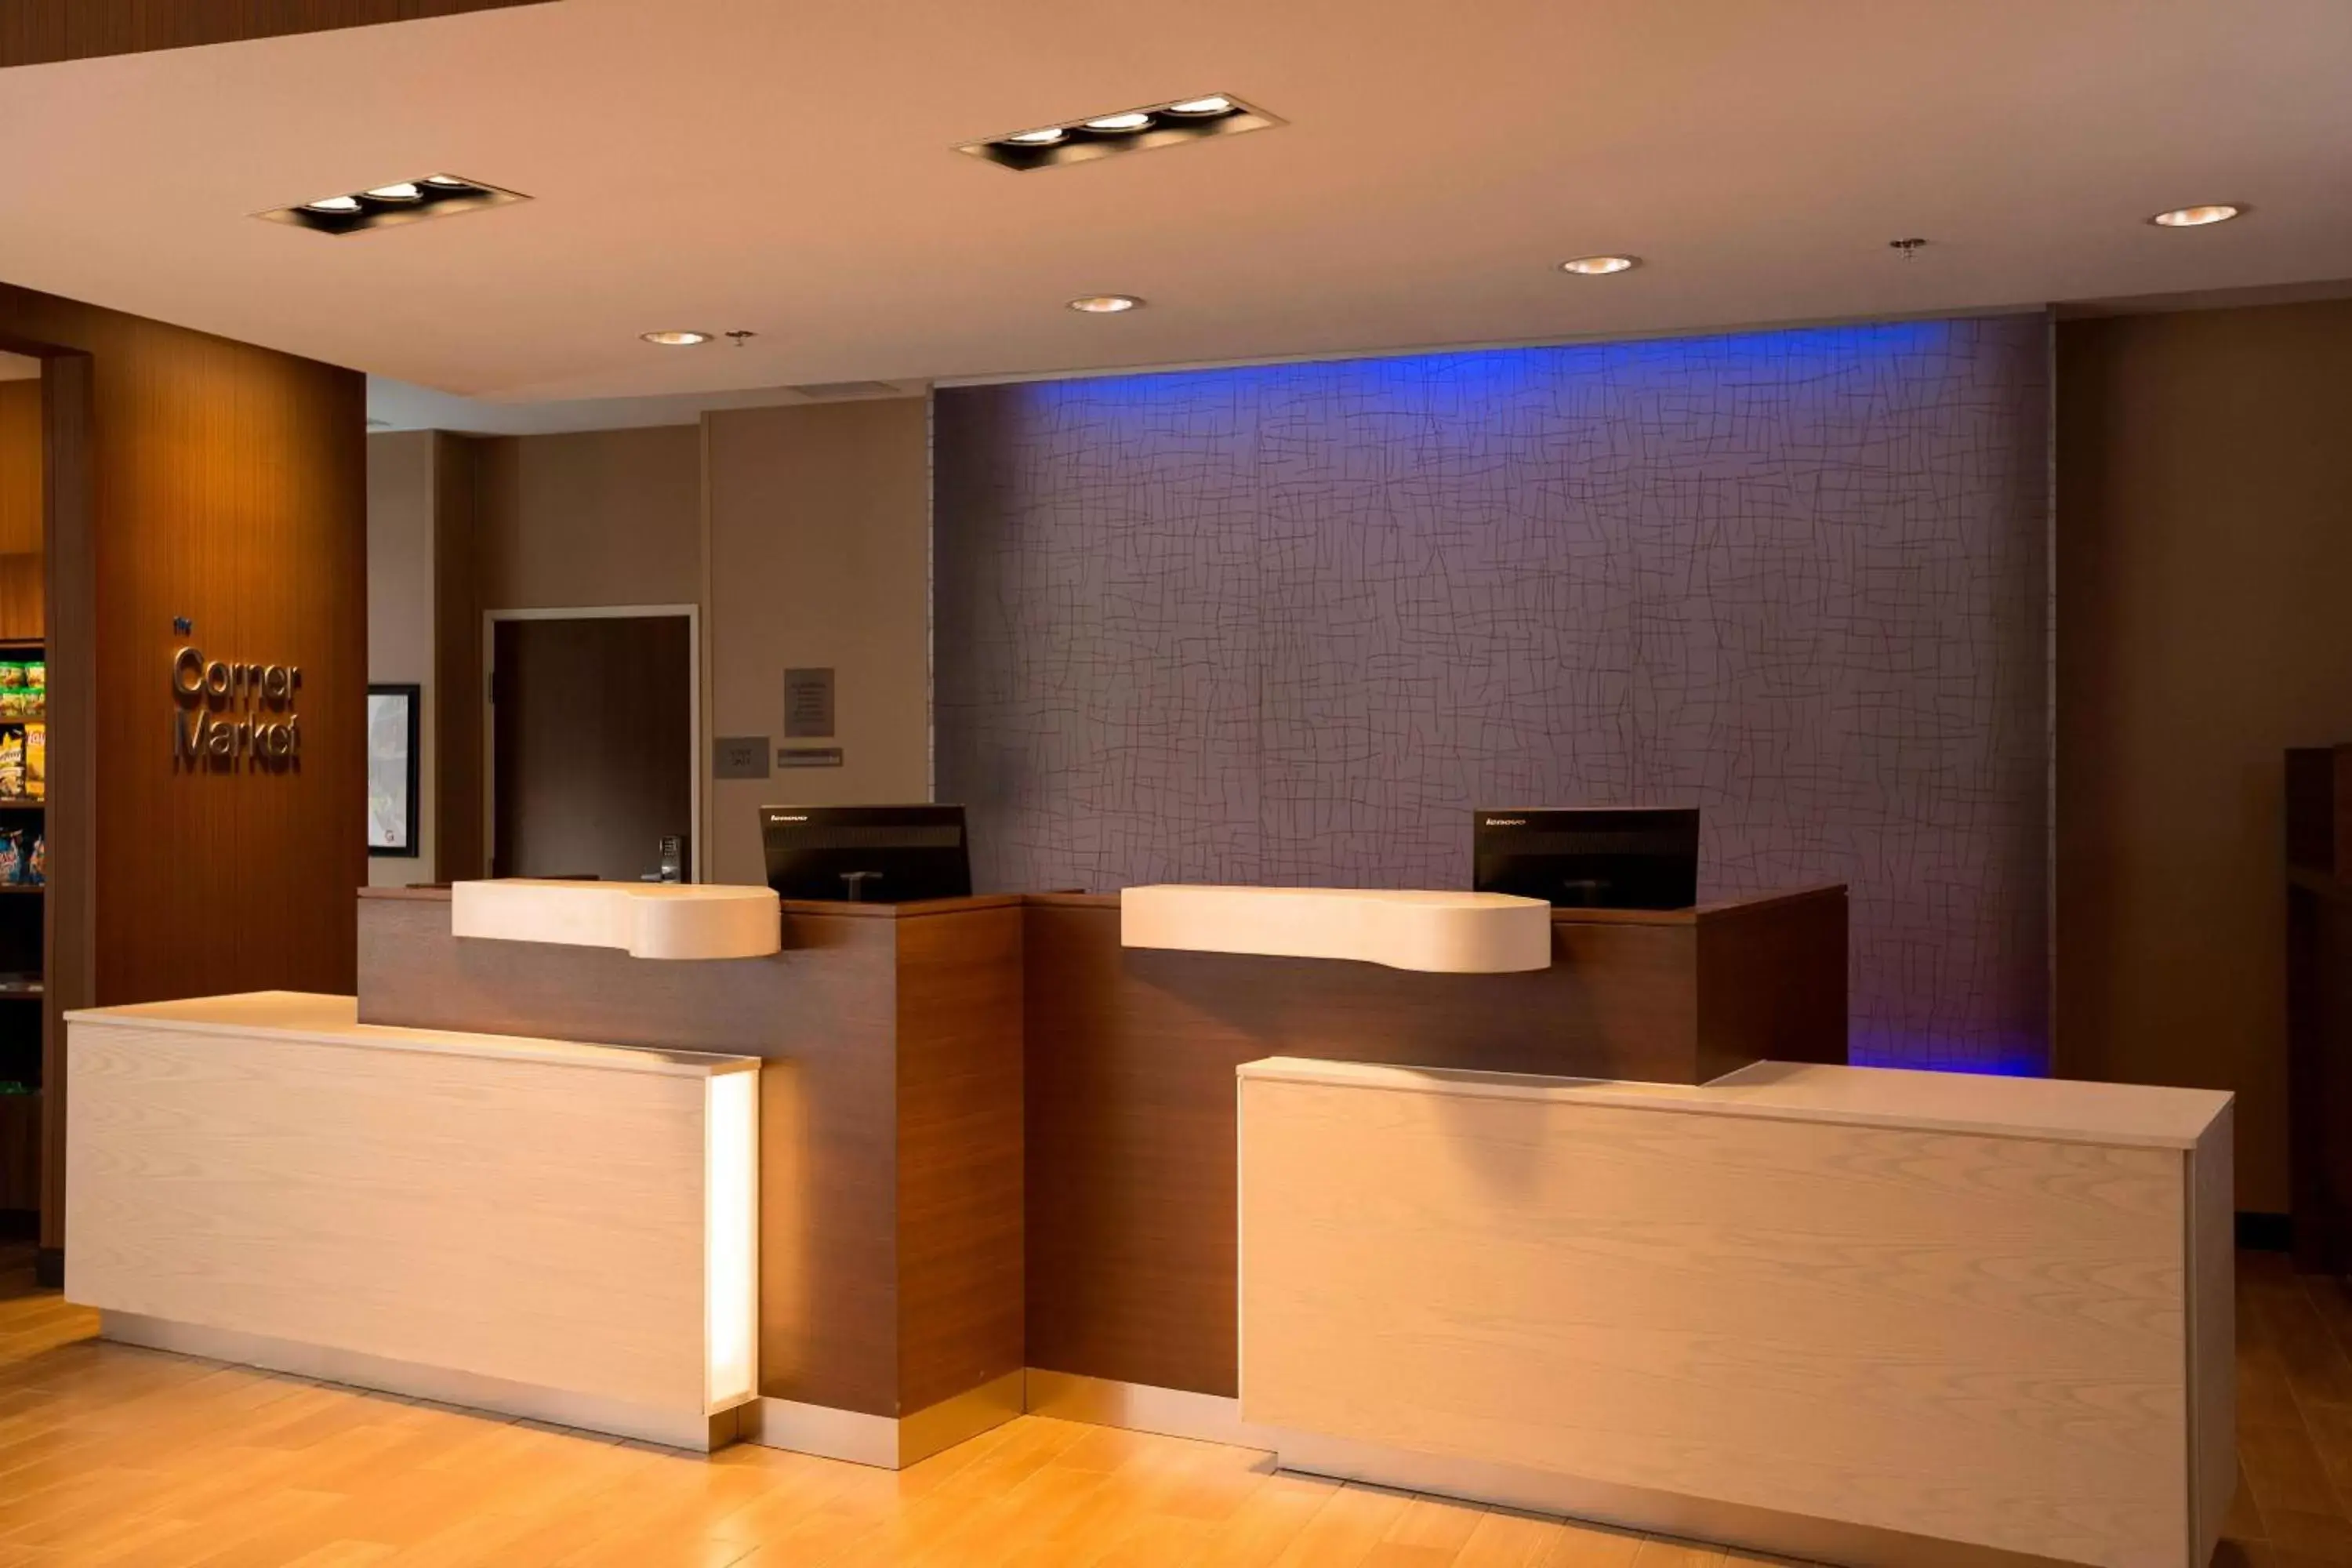 Lobby or reception, Lobby/Reception in Fairfield Inn & Suites by Marriott Durango